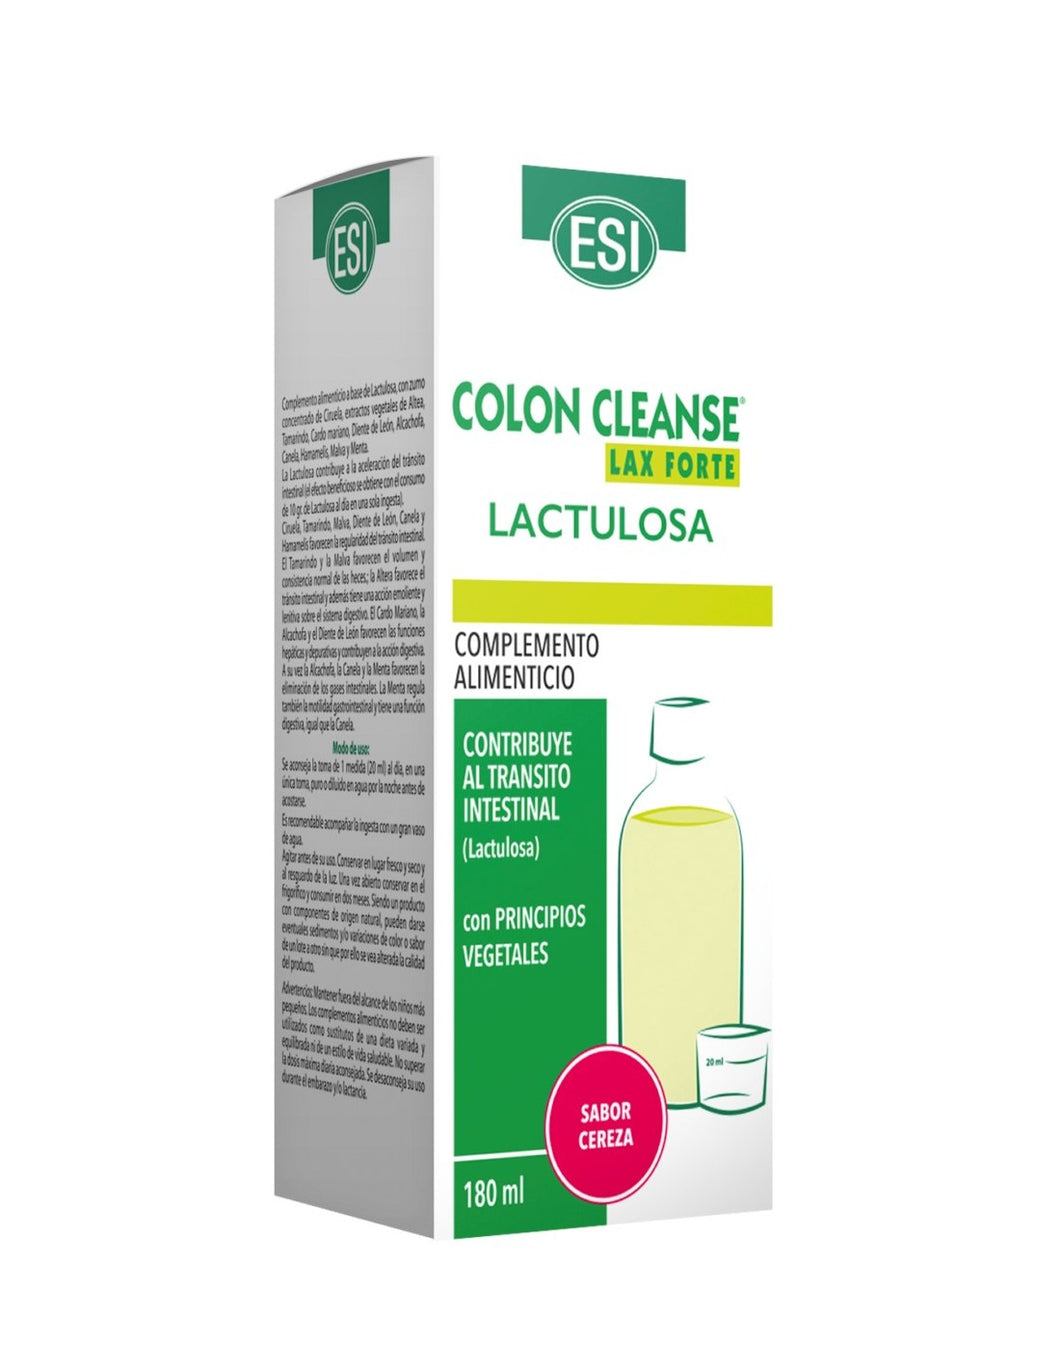 ESI Colon Cleanse Lactulosa 180ml.